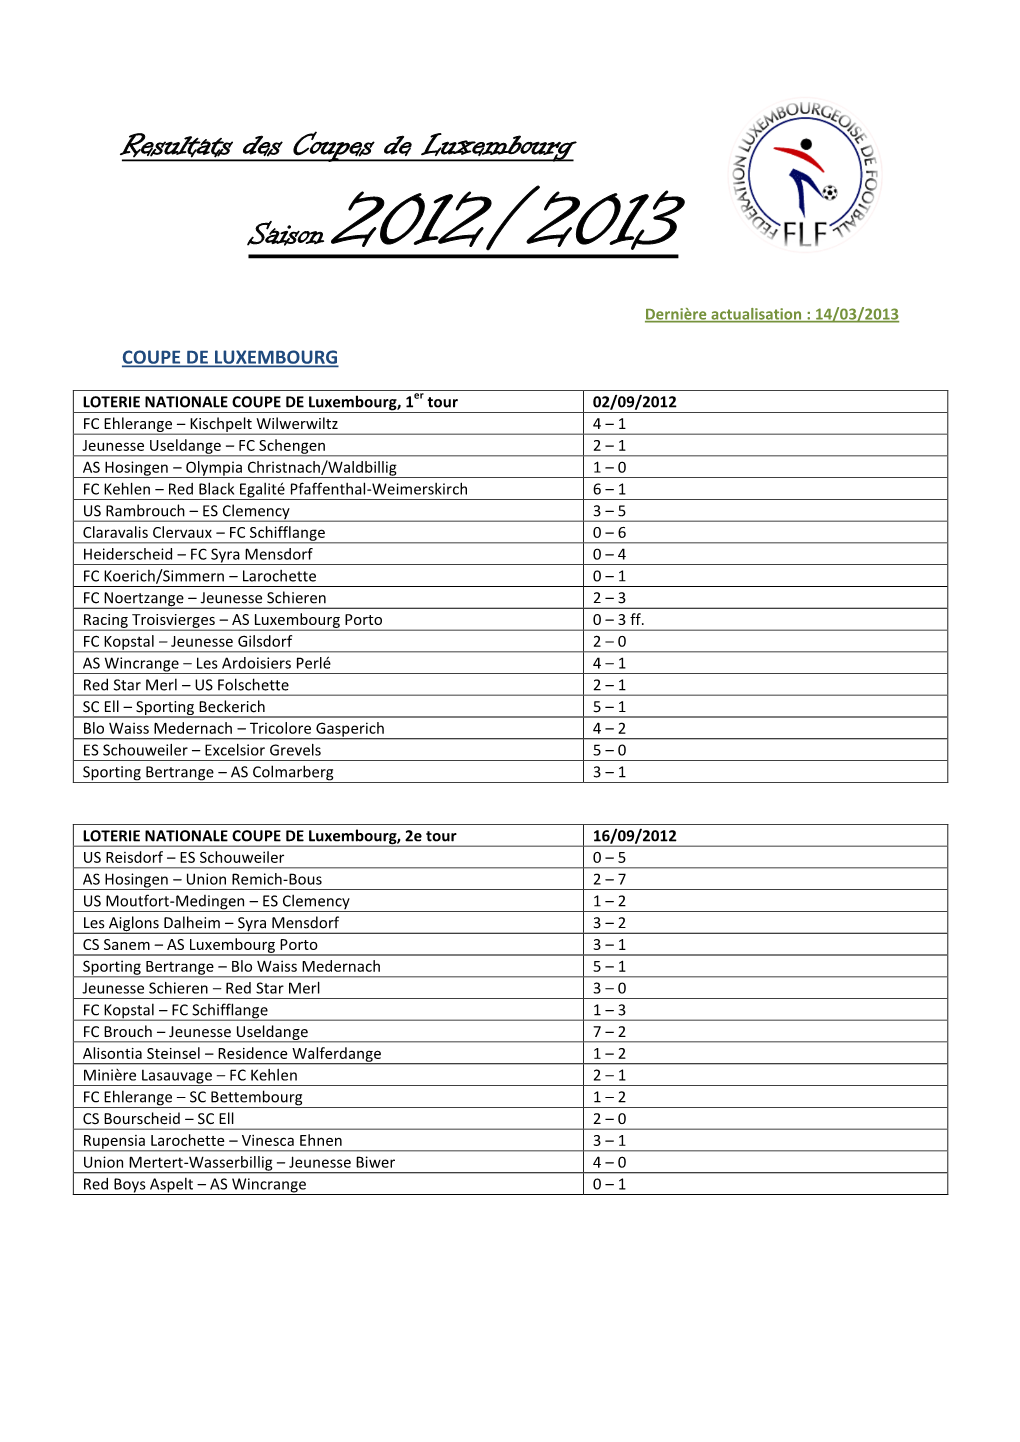 Resultats Des Coupes De Luxembourg Saison 2012/2013